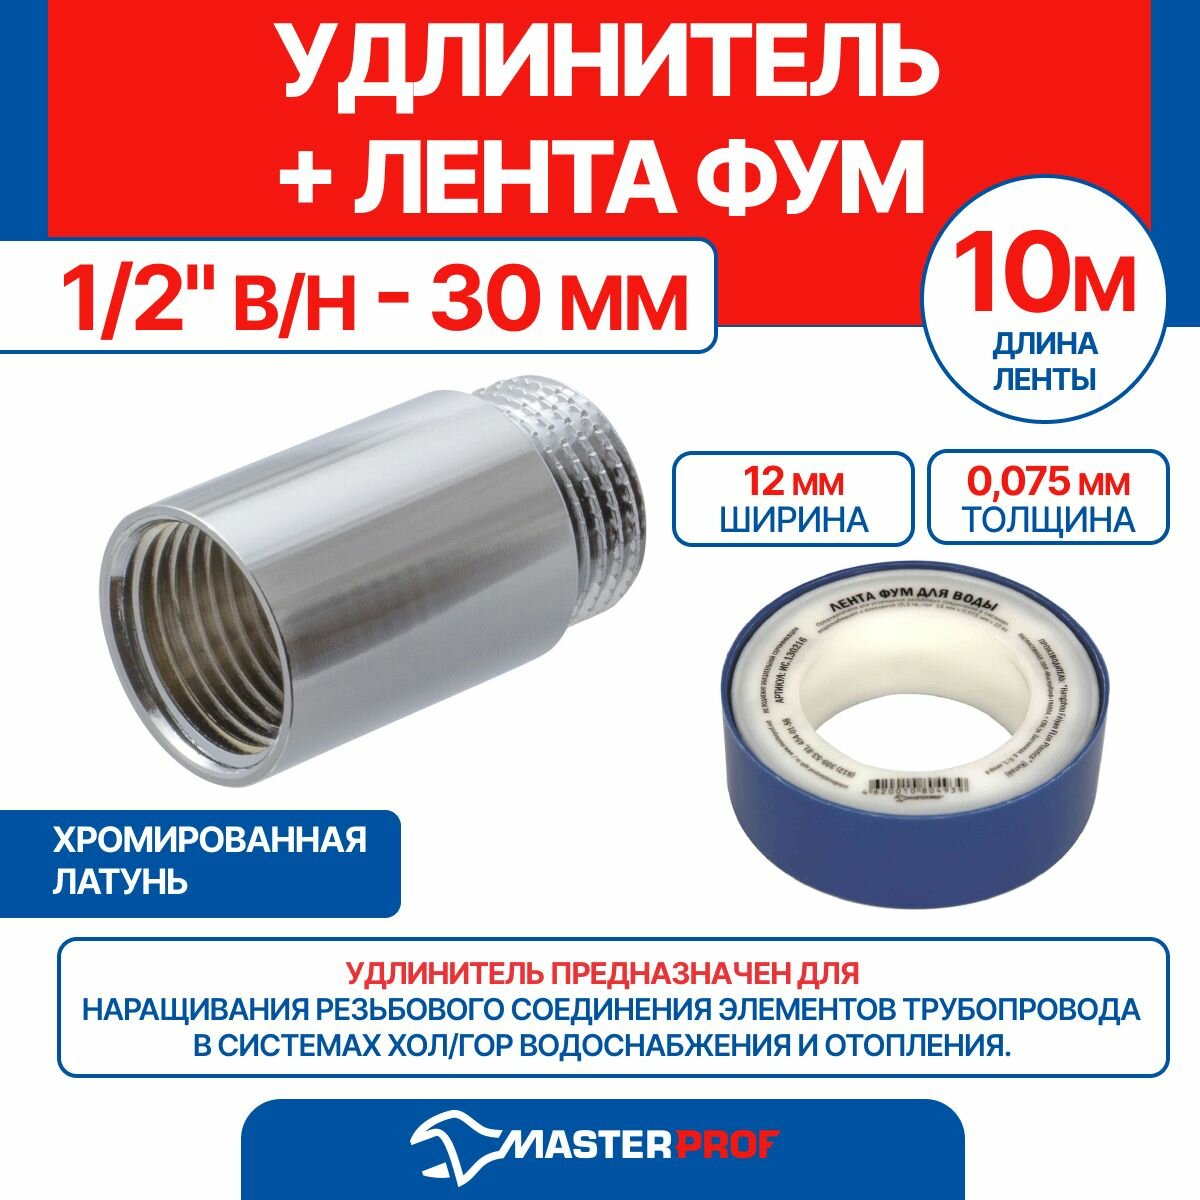 Удлинитель 1/2" в/н - 30 мм (хром) + лента ФУМ 10 м